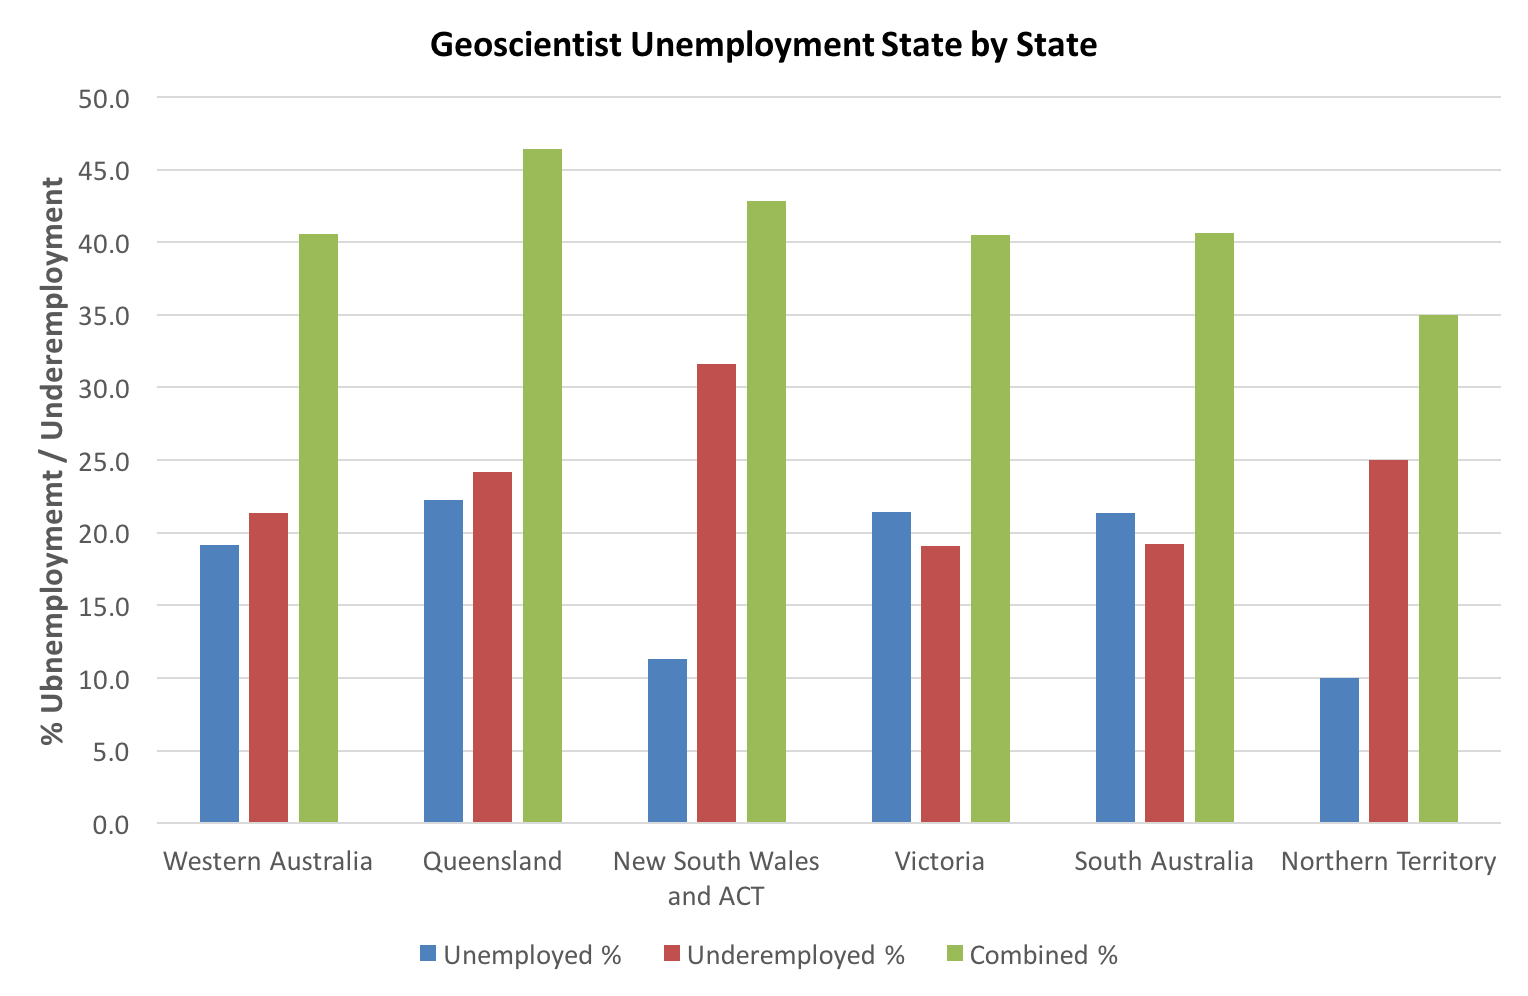 Figure 2. Geoscientist unemployment and underemployment by State 